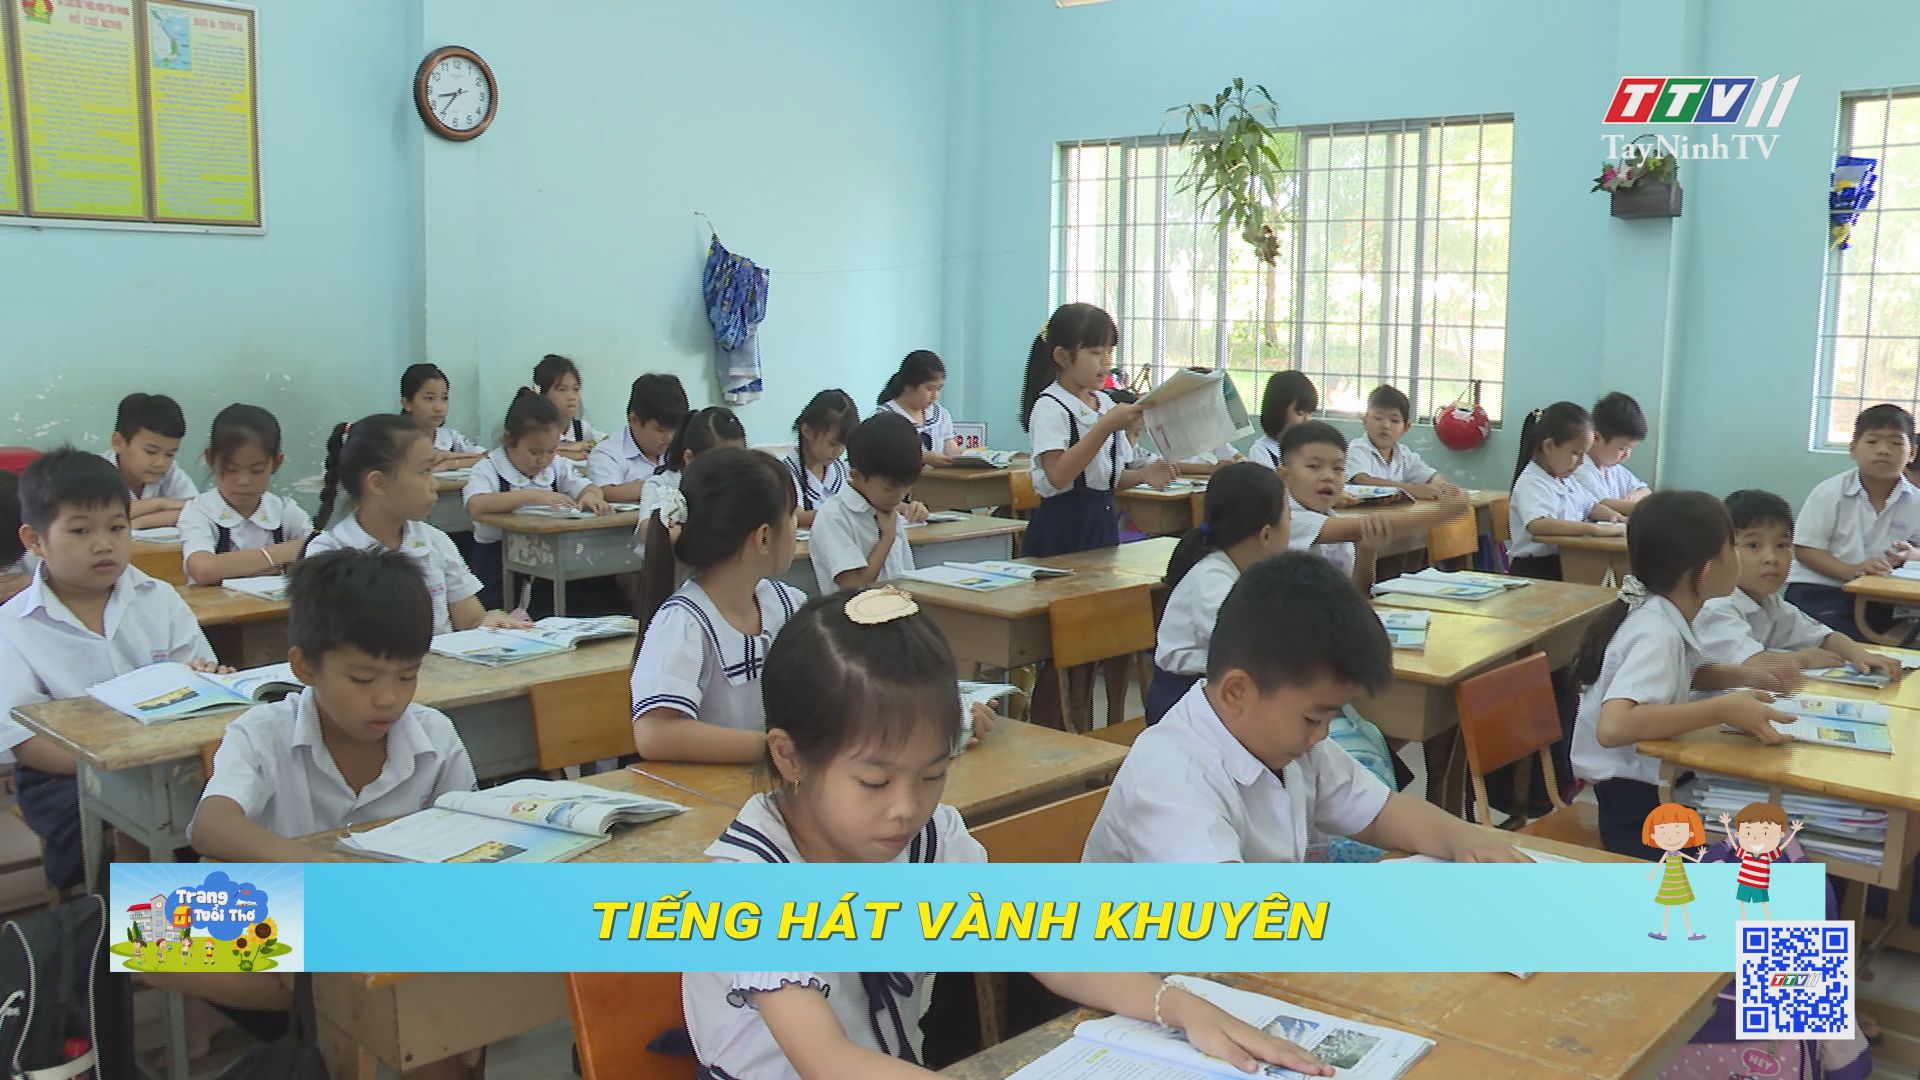 Tiếng hát Vành Khuyên | Trang tuổi thơ | TayNinhTV